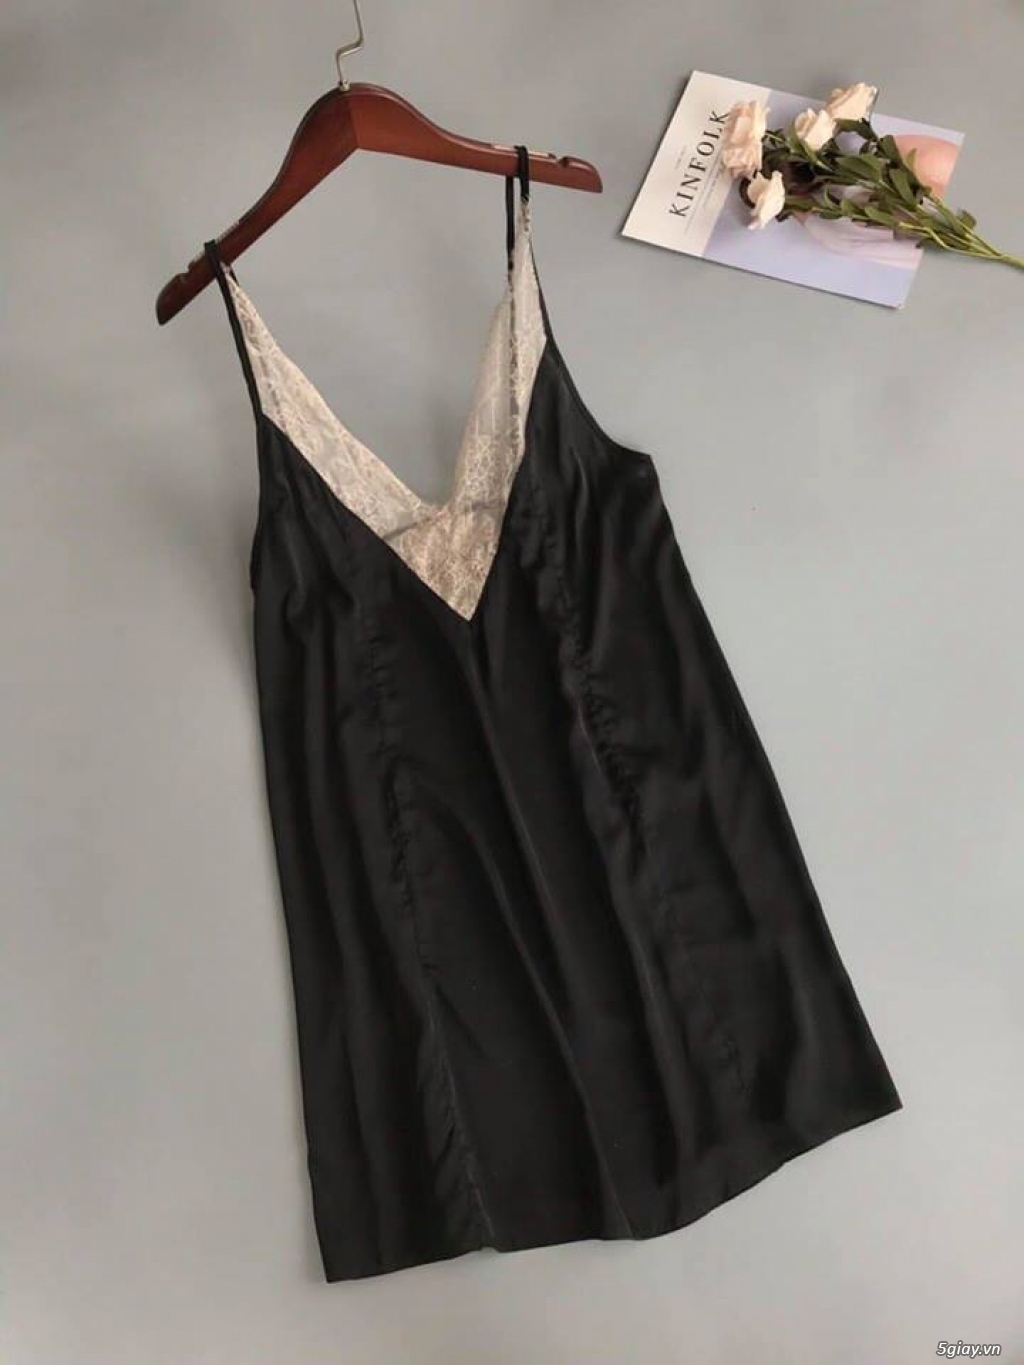 Shop Hiền: Đầm ngủ sẹc xy quyến rủ cho cac nàng ngày valentine 2018 - 19